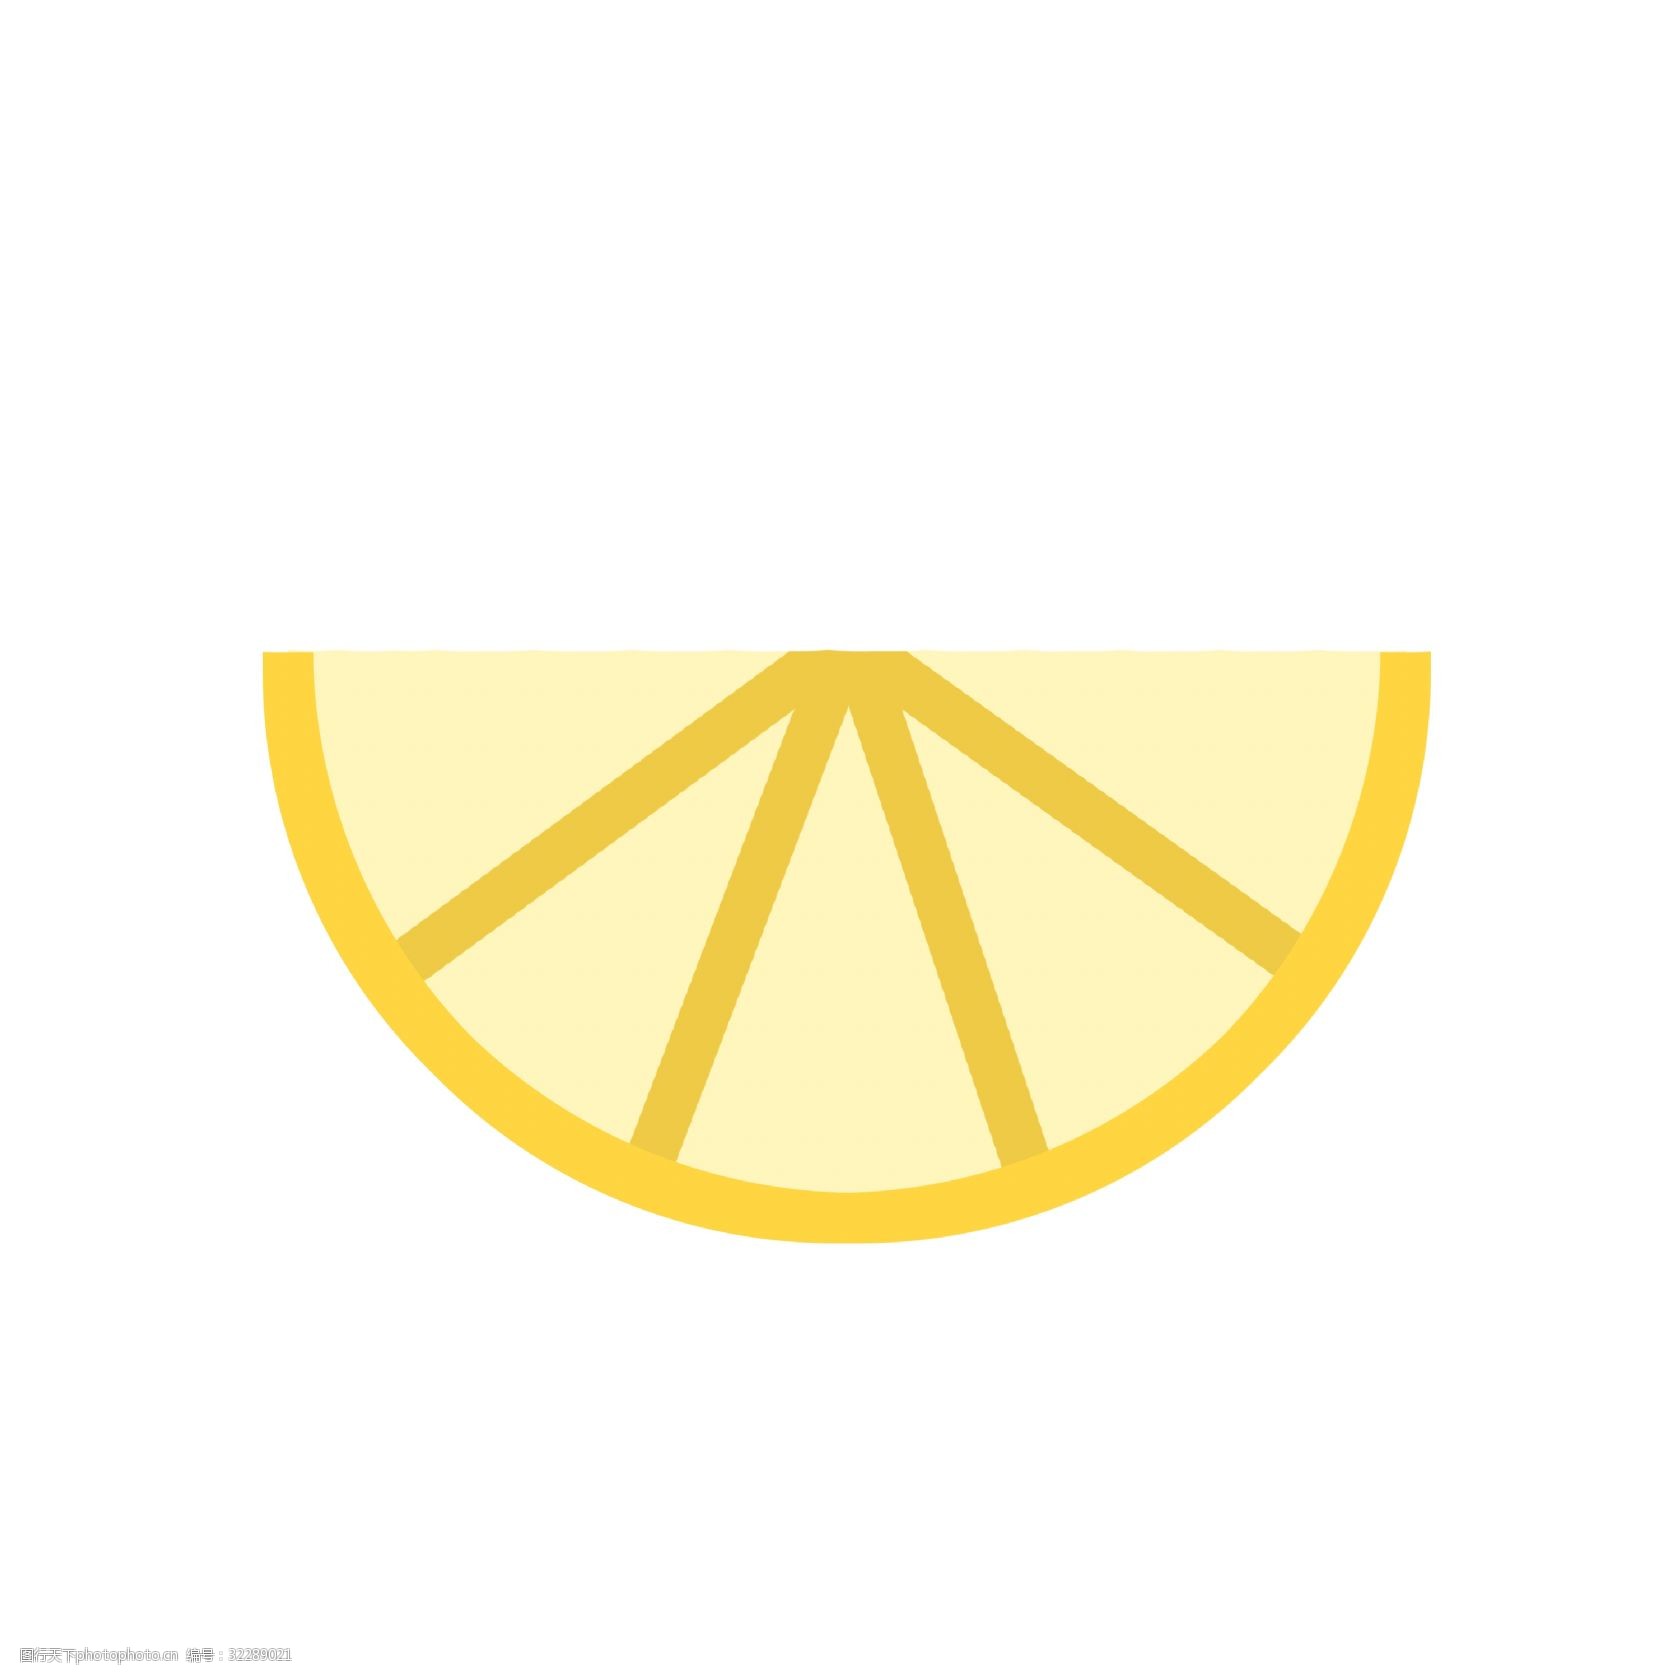 关键词:水果图标元素png 柠檬 水果 ppt图标 简约风格 水果图标 海报